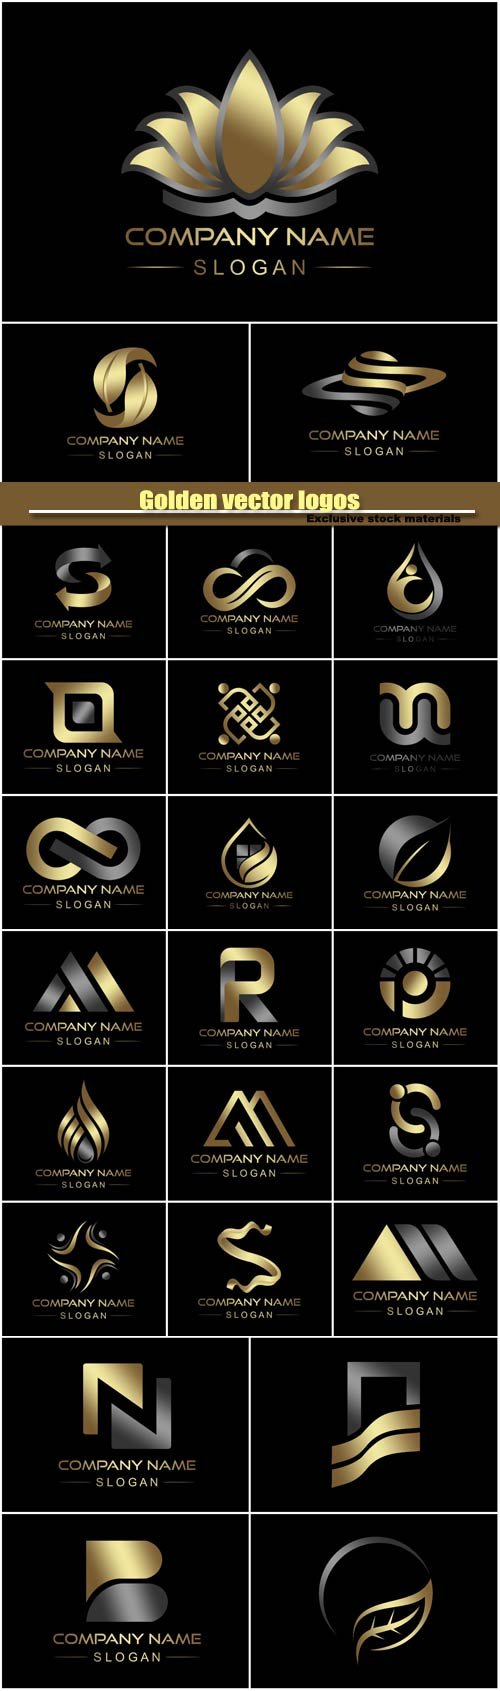 Golden vector logos, business company icon